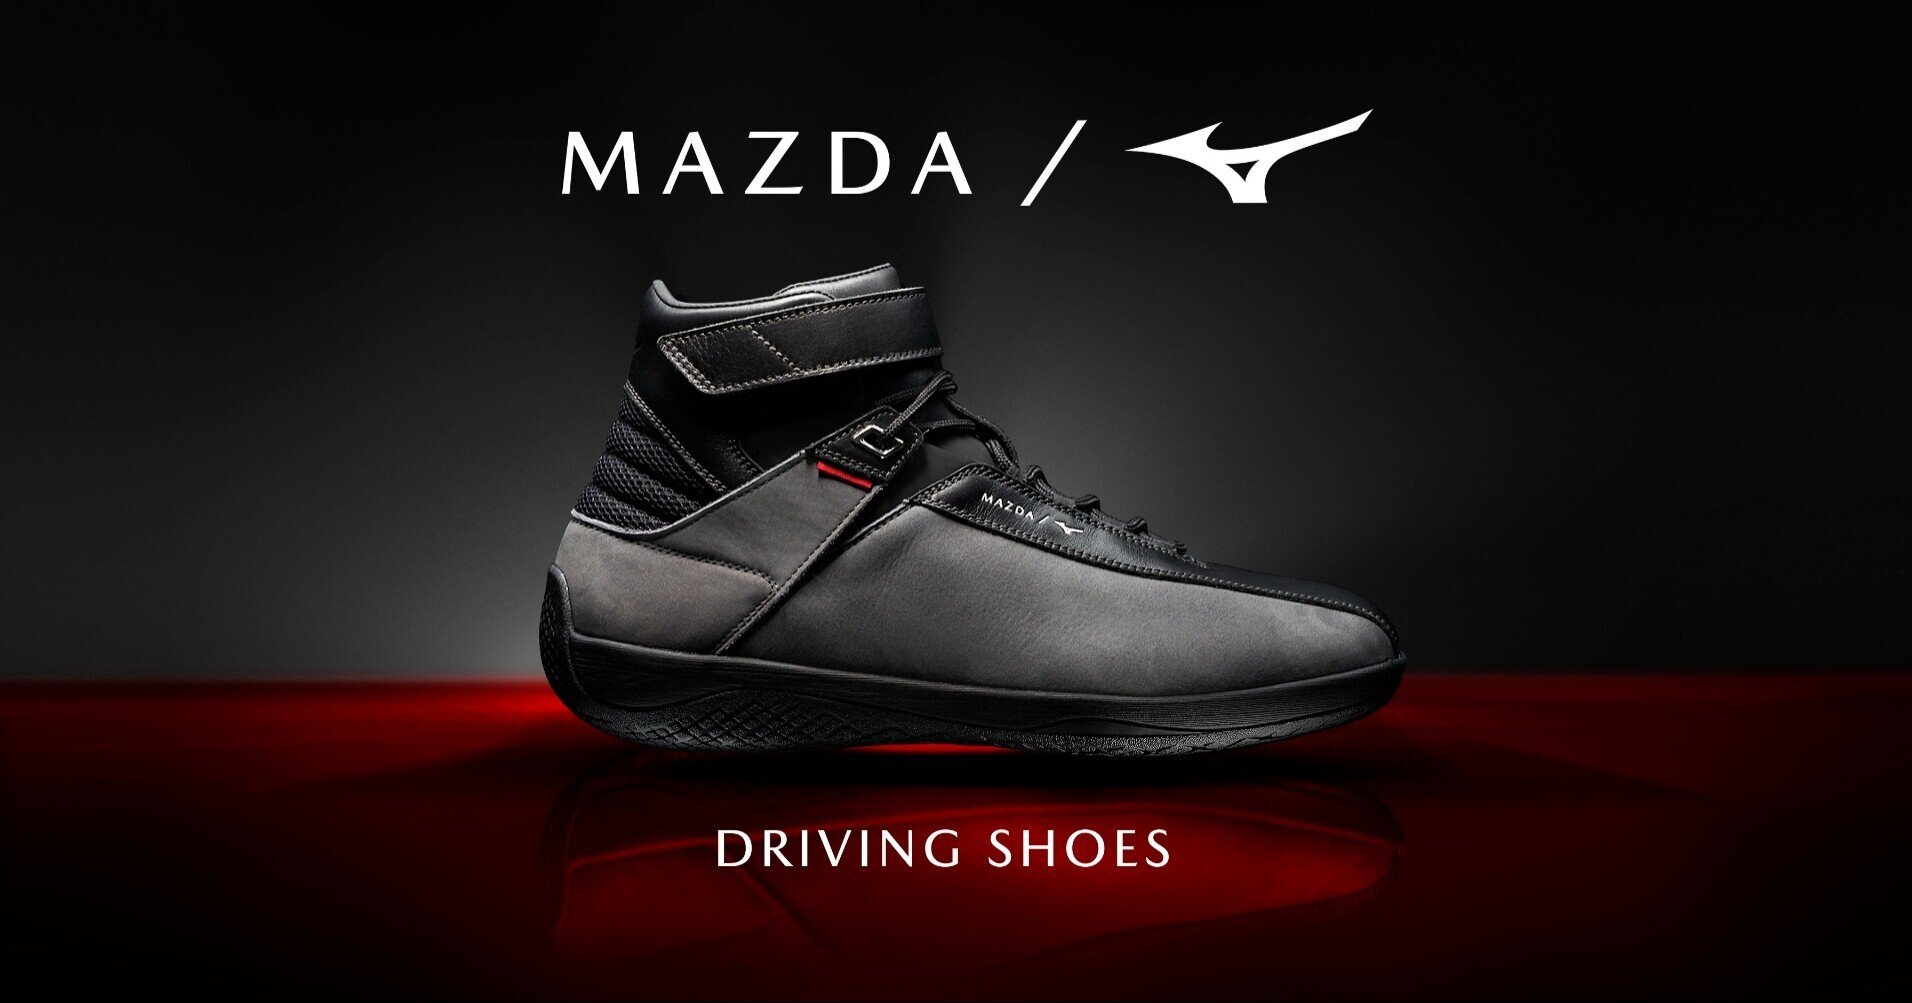 MazdaMazda ドライビングシューズ 限定品